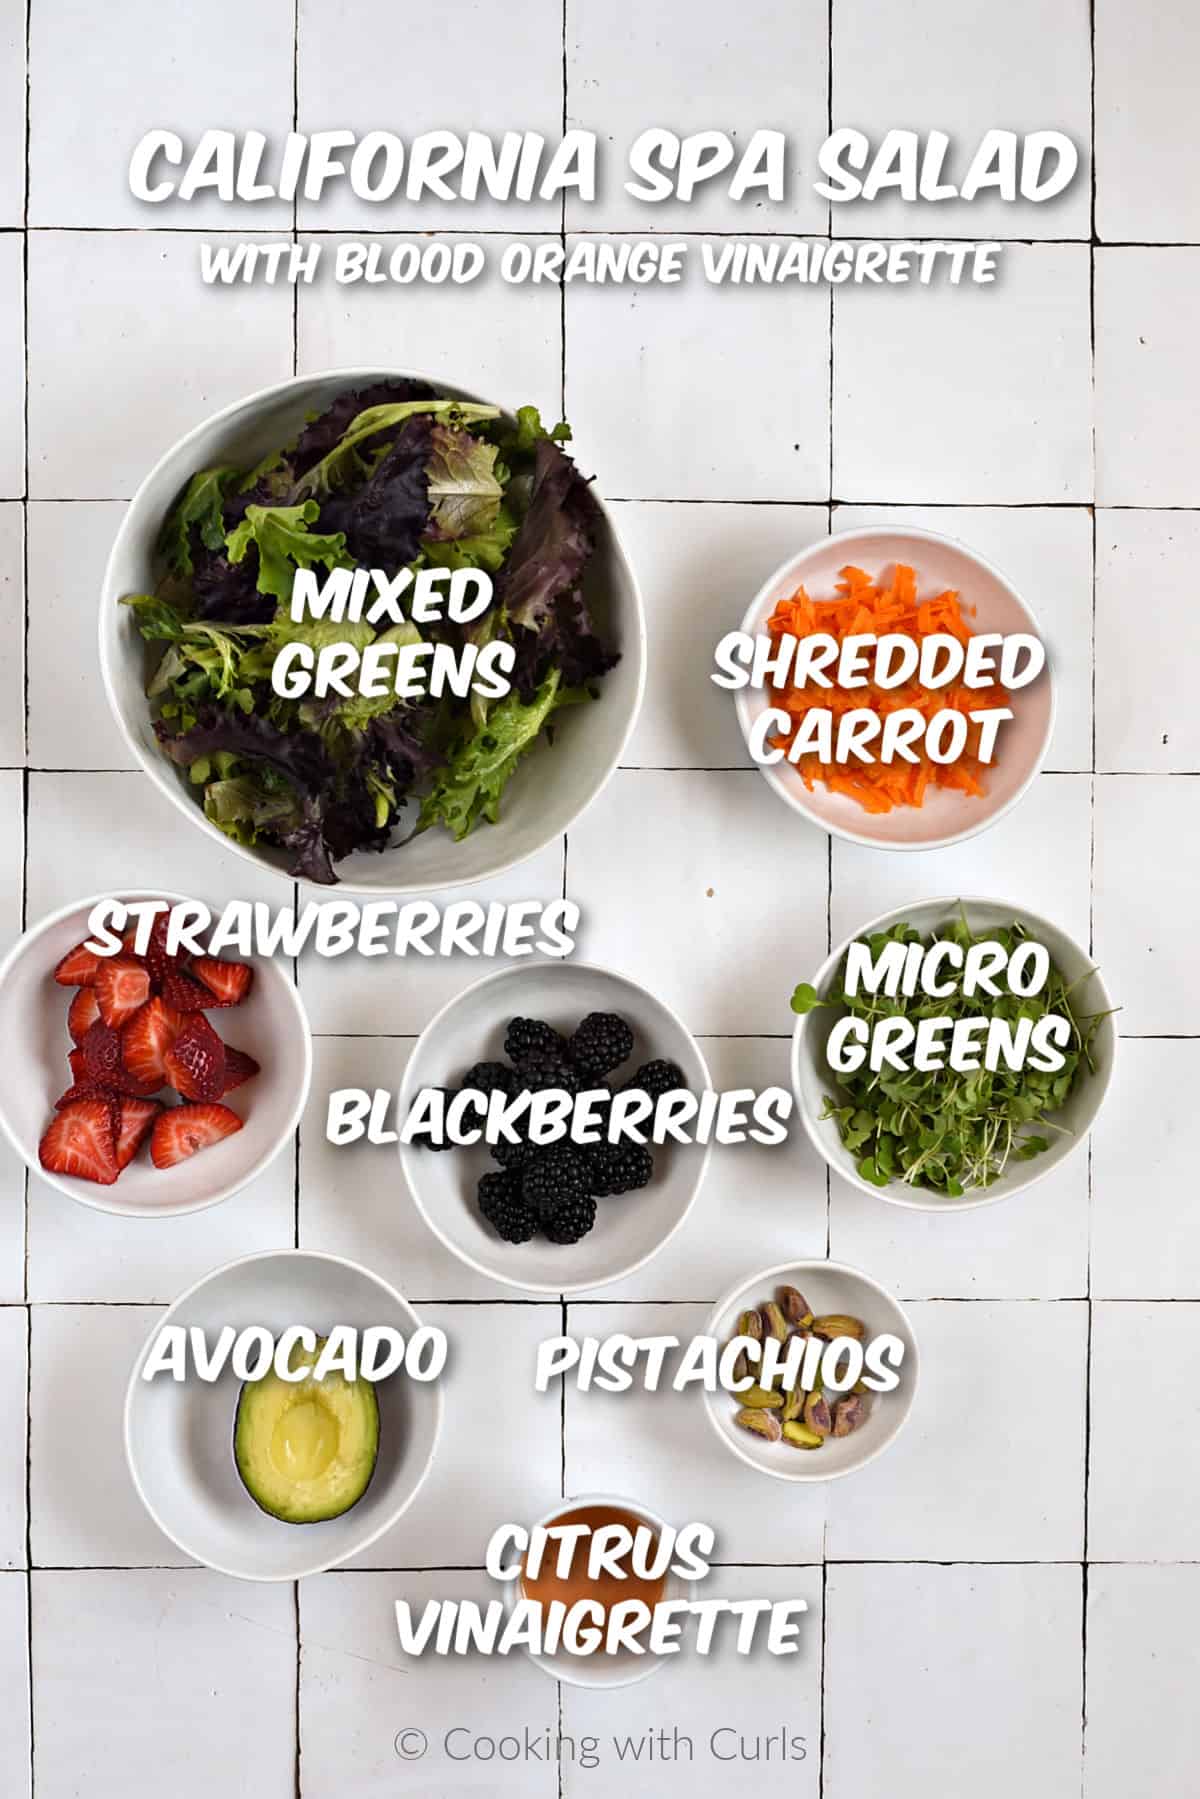 Ingredients to make California Spa Salad. 